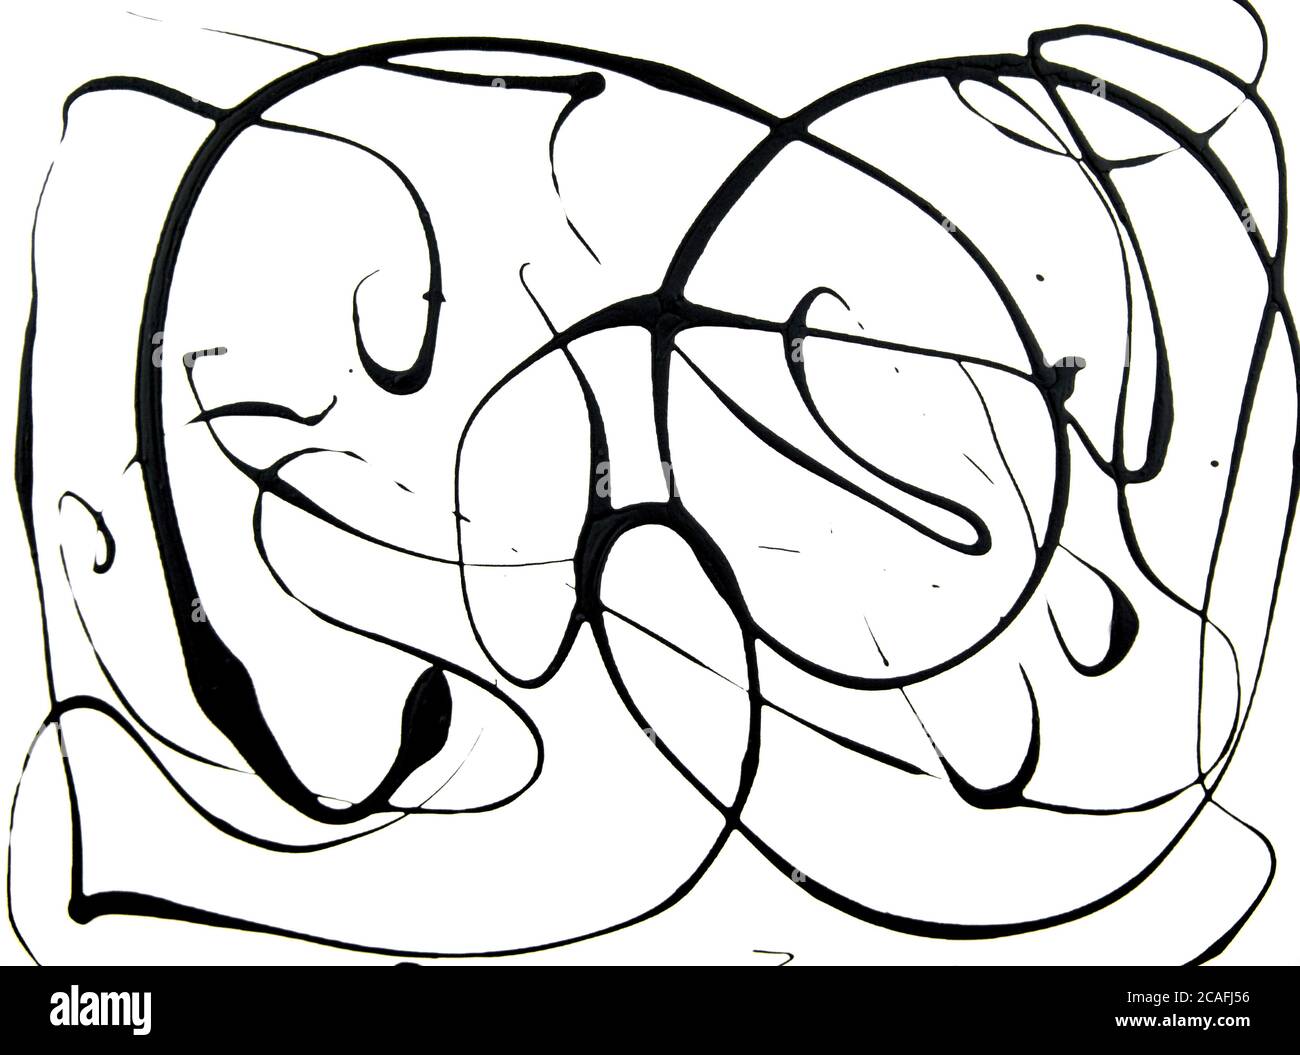 Schwarze unregelmäßige abstrakte Acryl Gießen Technik auf weißem Leinwand Hintergrund. Für dein Modell, Overlay, Flat Lay, Hintergründe. Speicherplatz kopieren. Stockfoto